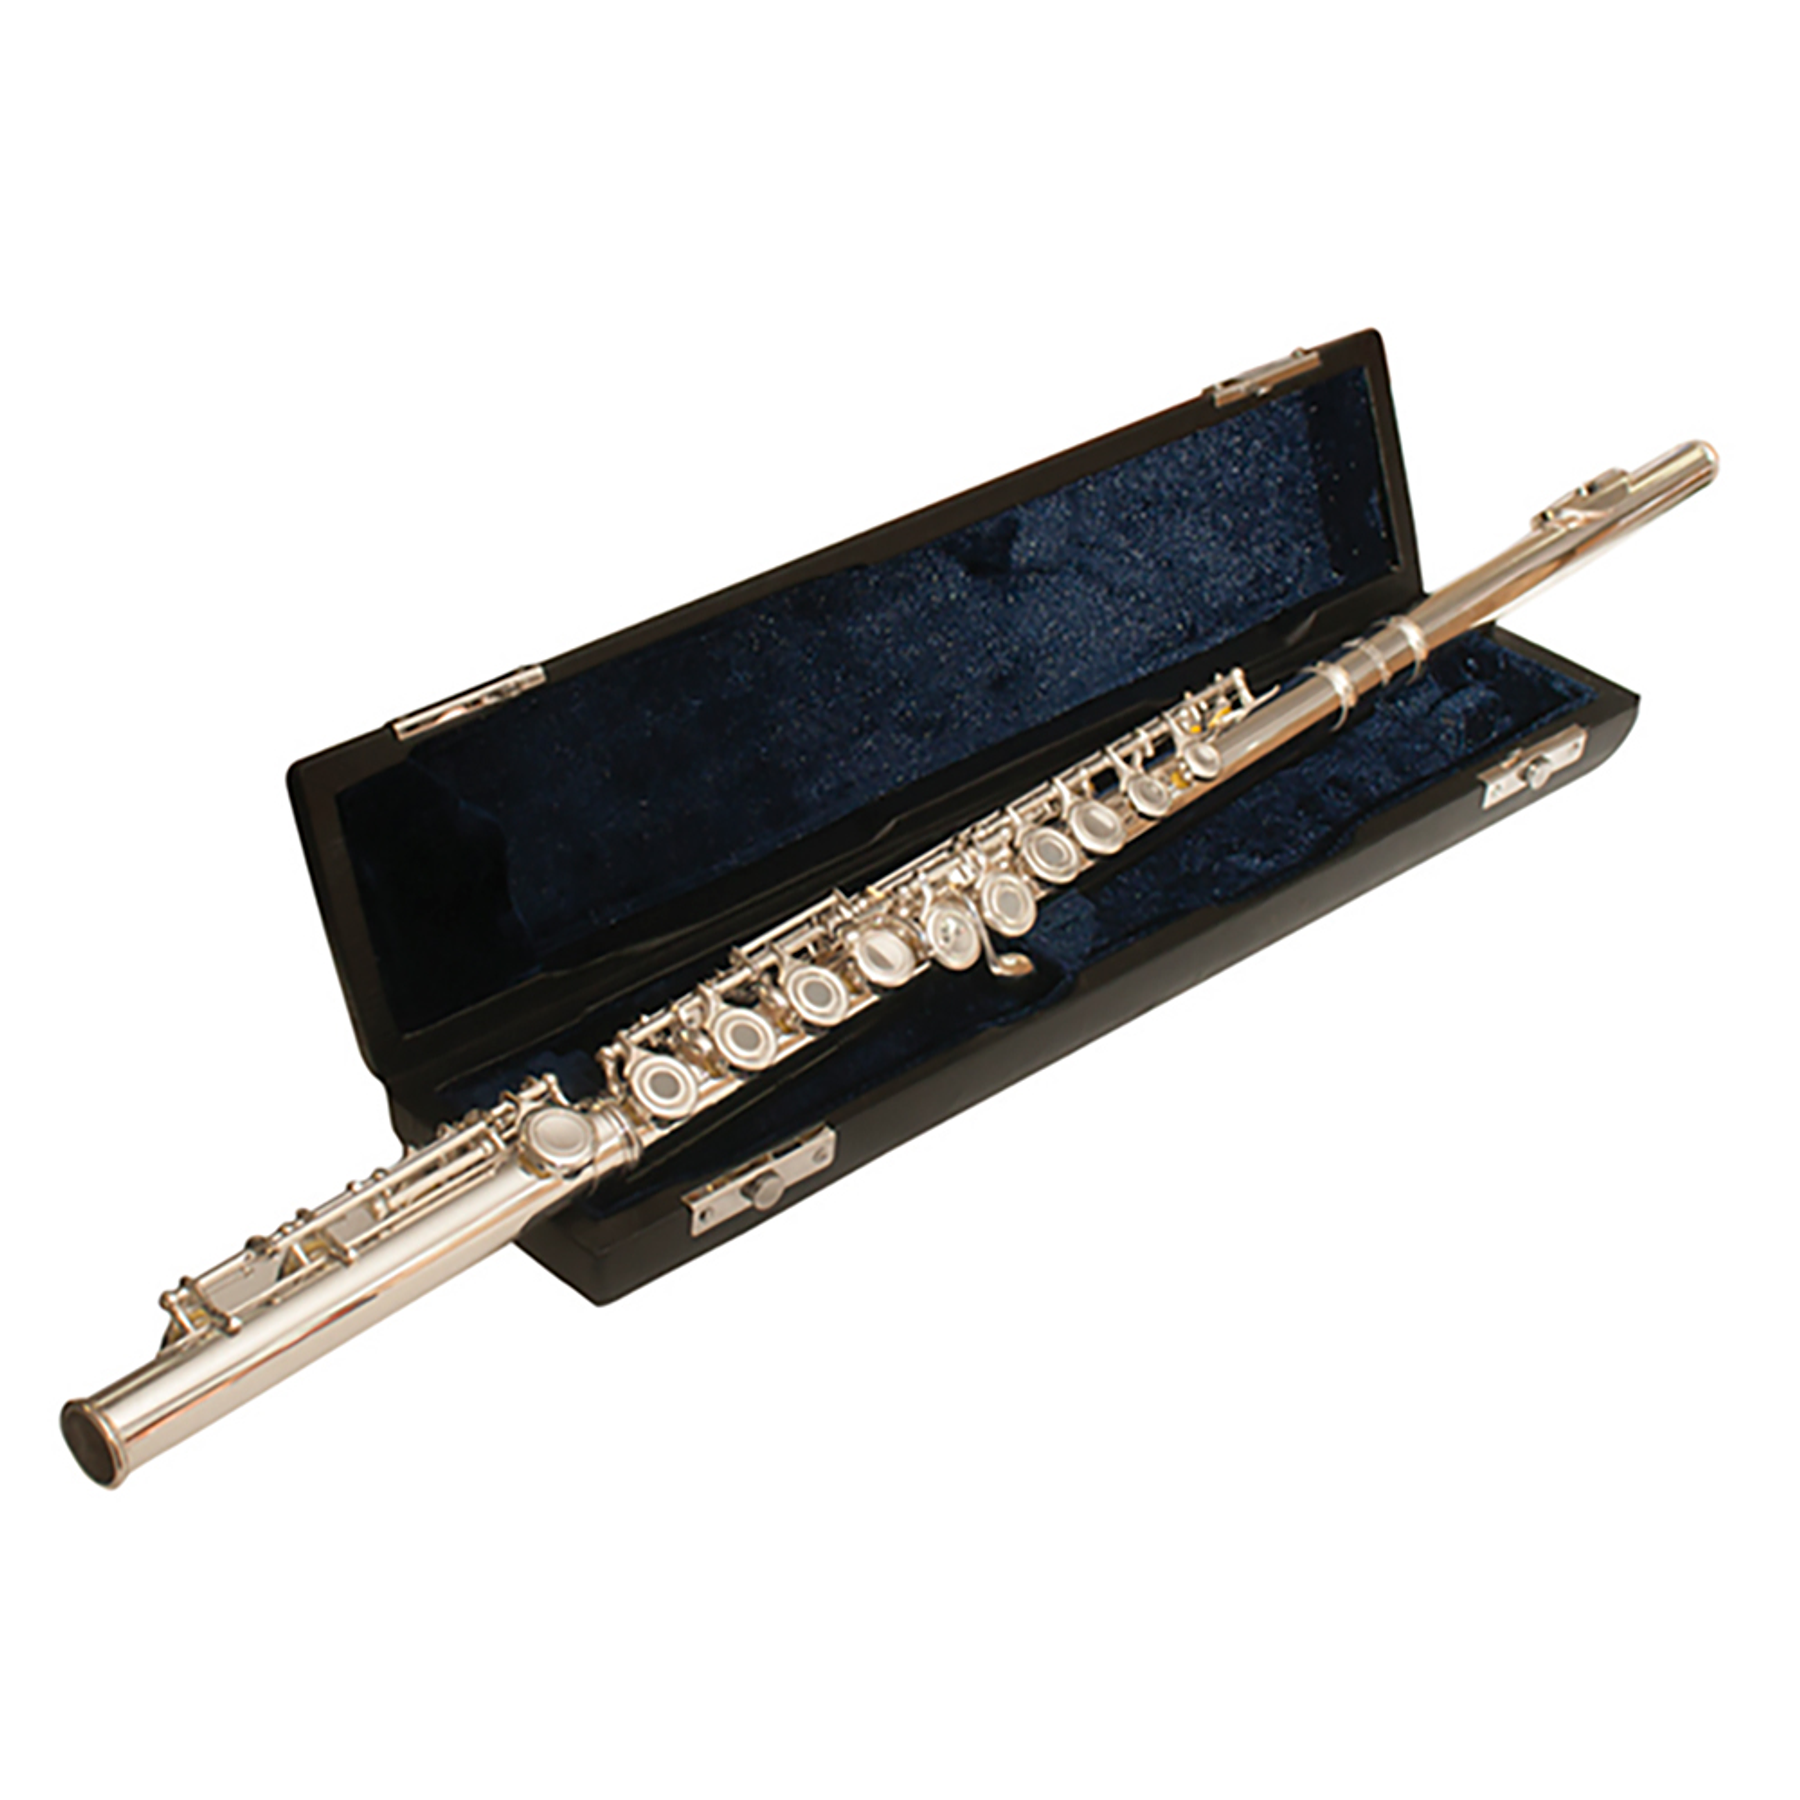 Flauta Traversa LFT16 Lübeck, 16 tonos